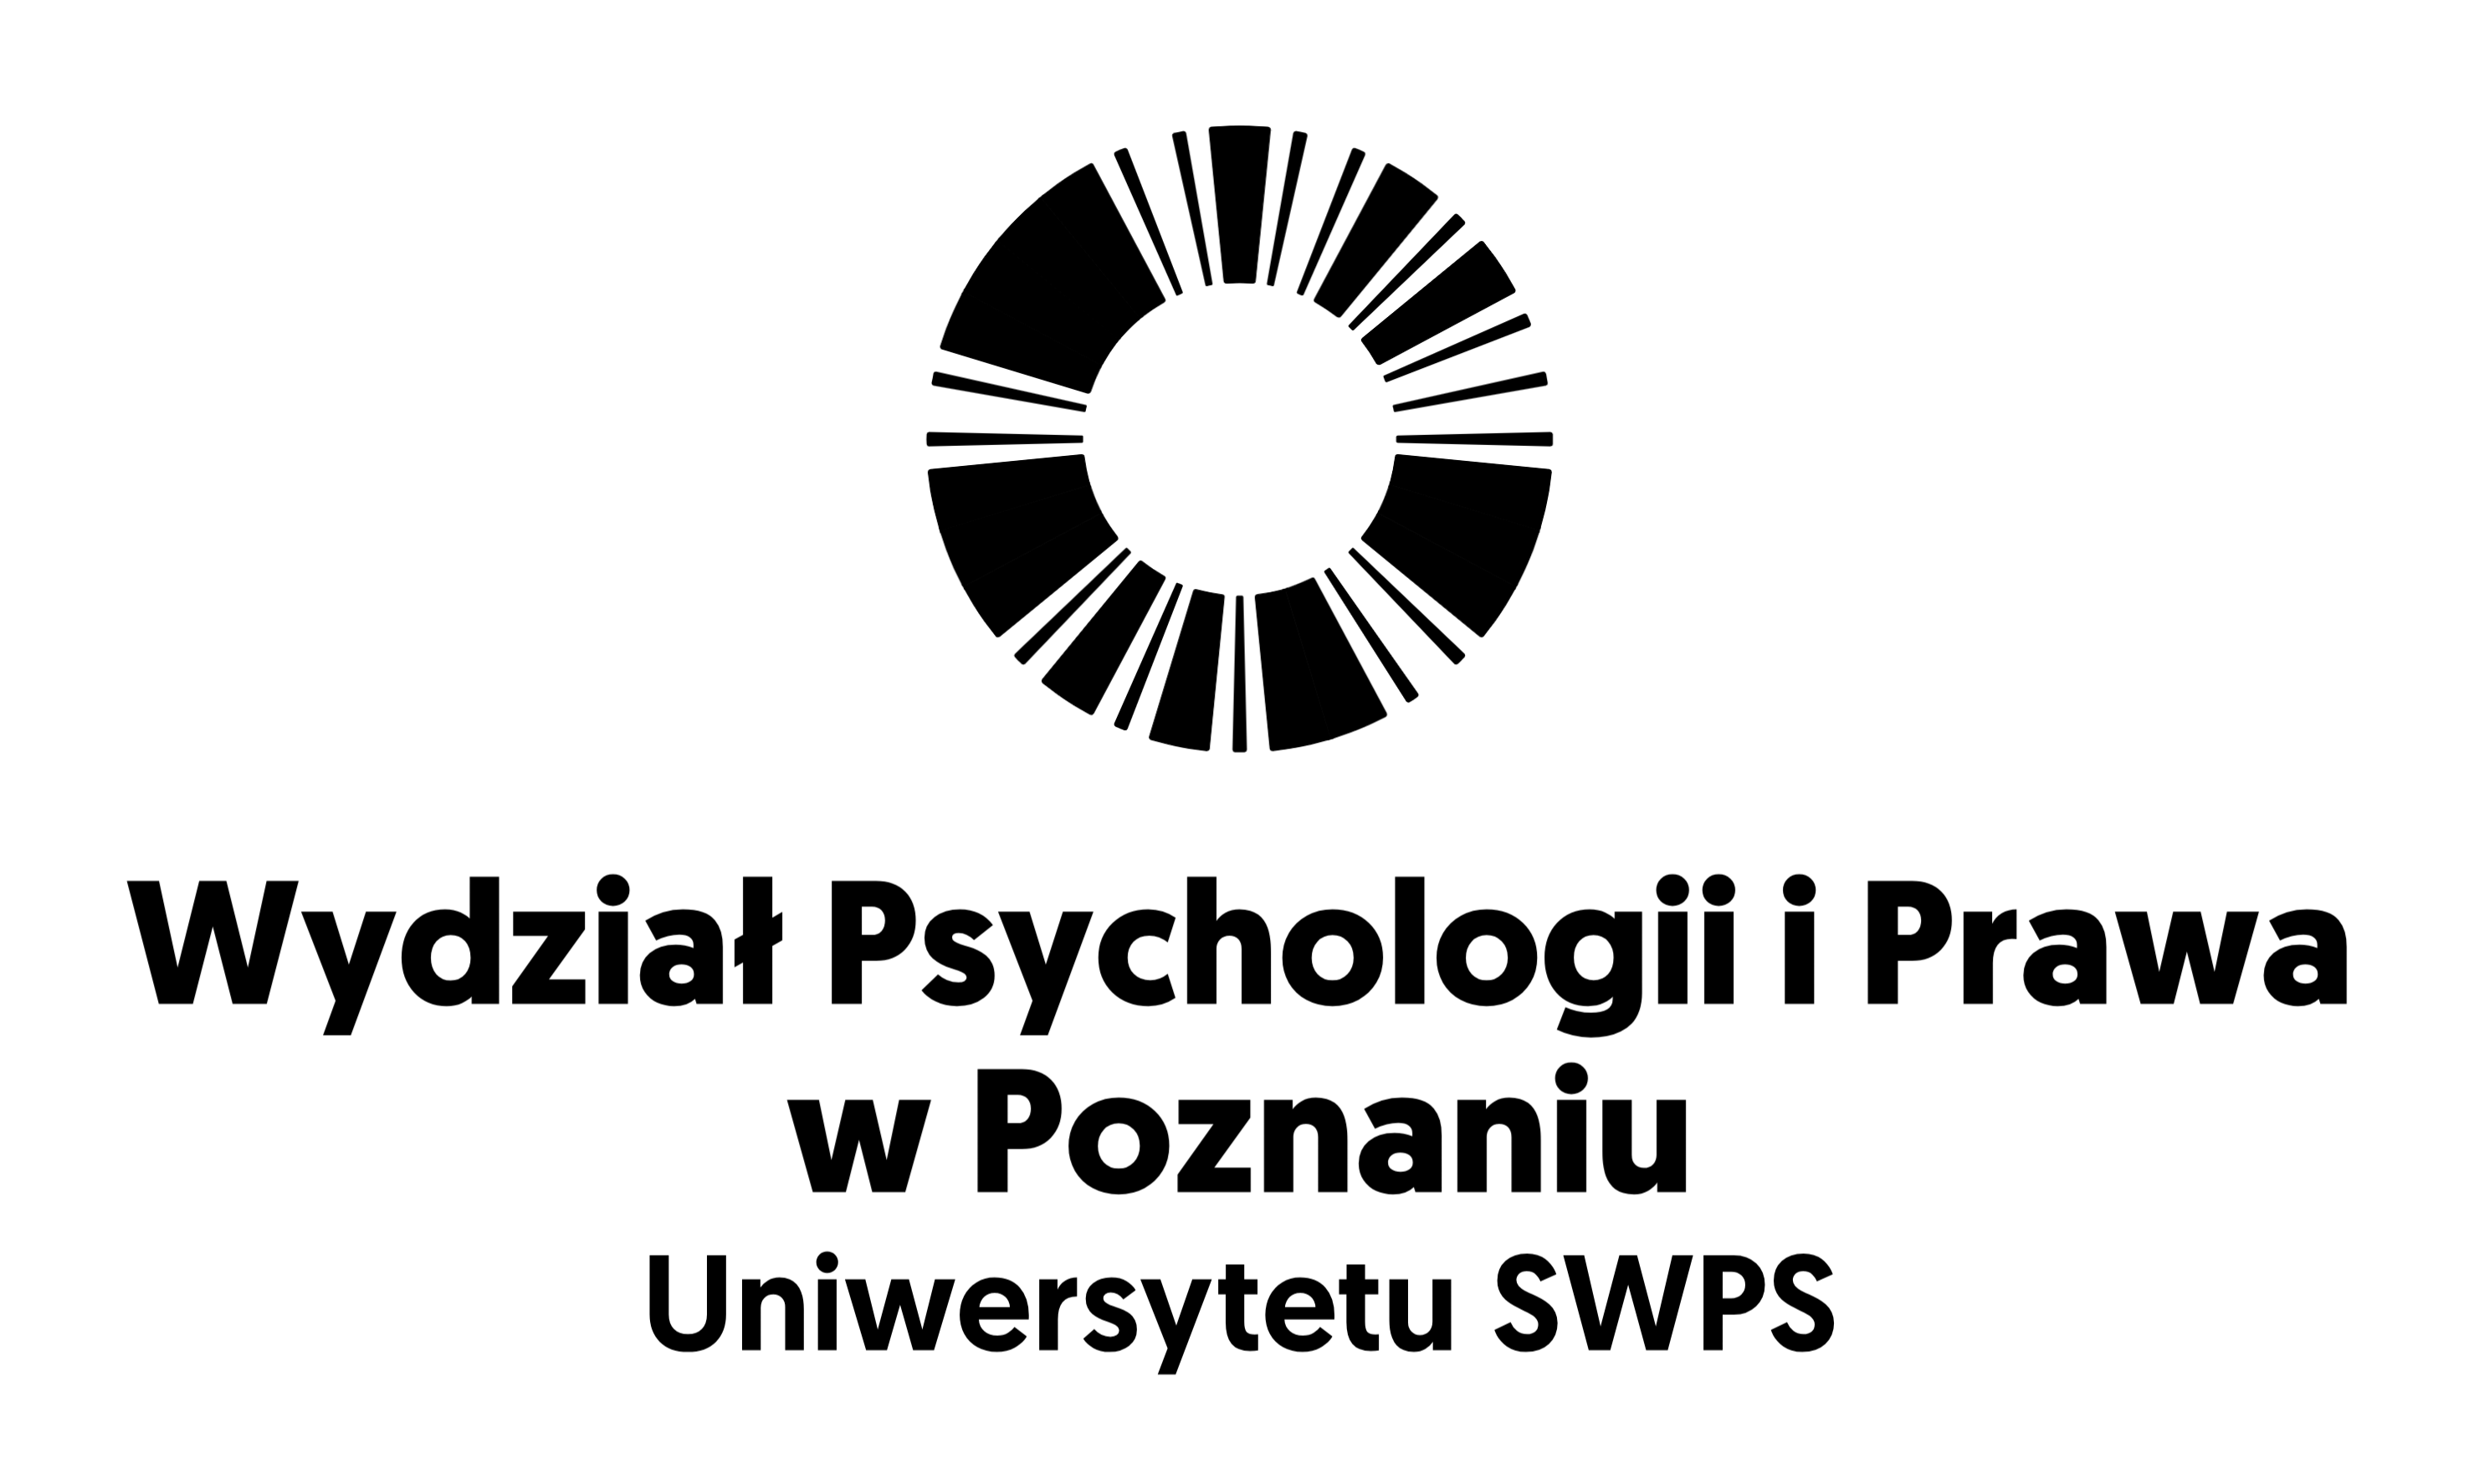 Uniwersytet SWPS Poznań